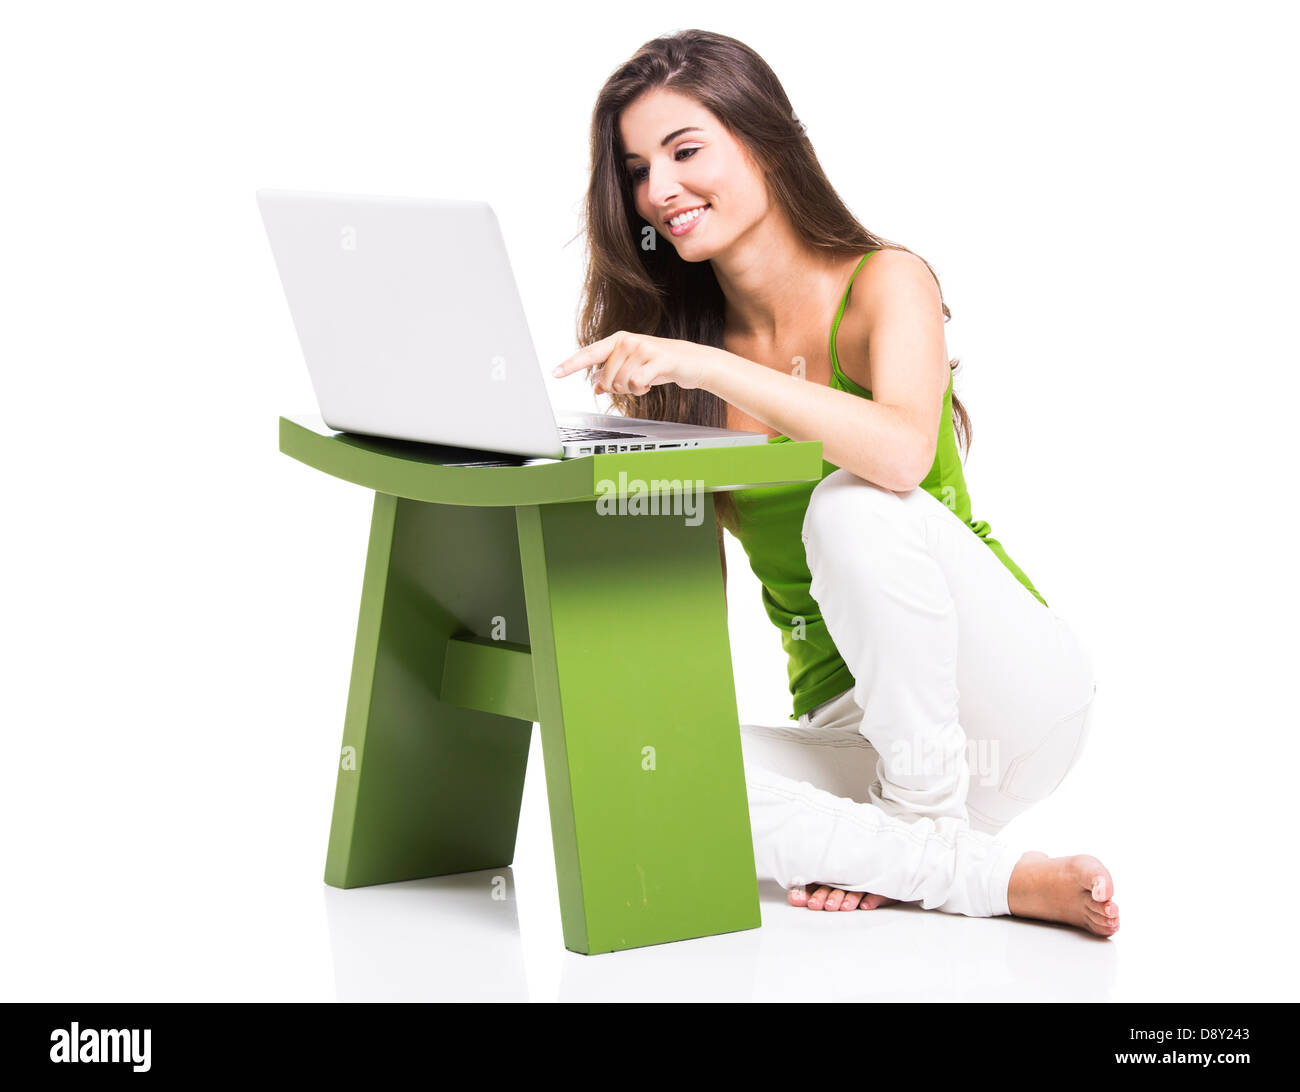 Bella donna seduta sul pavimento a lavorare con un computer portatile, isolate su un bianco Foto Stock